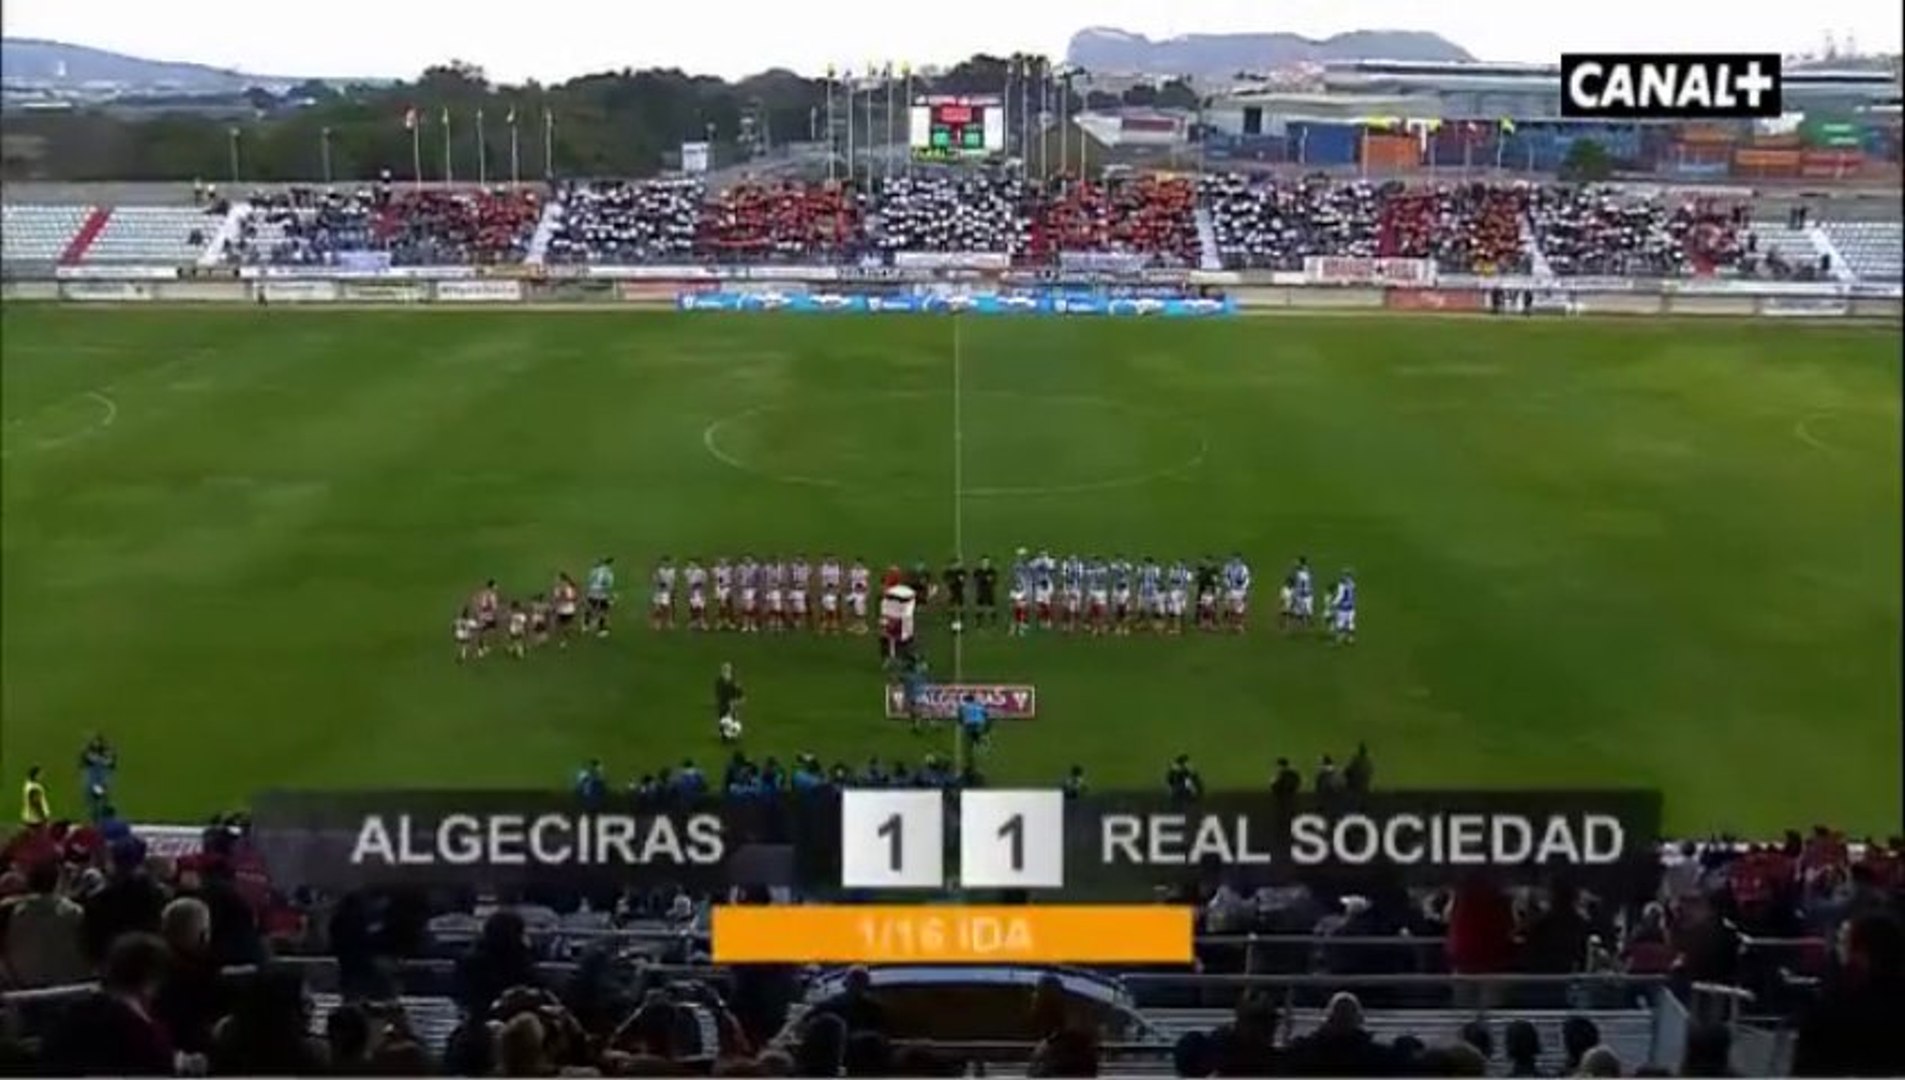 Copa del Rey Algeciras 1 Real Sociedad 1 - Vídeo Dailymotion